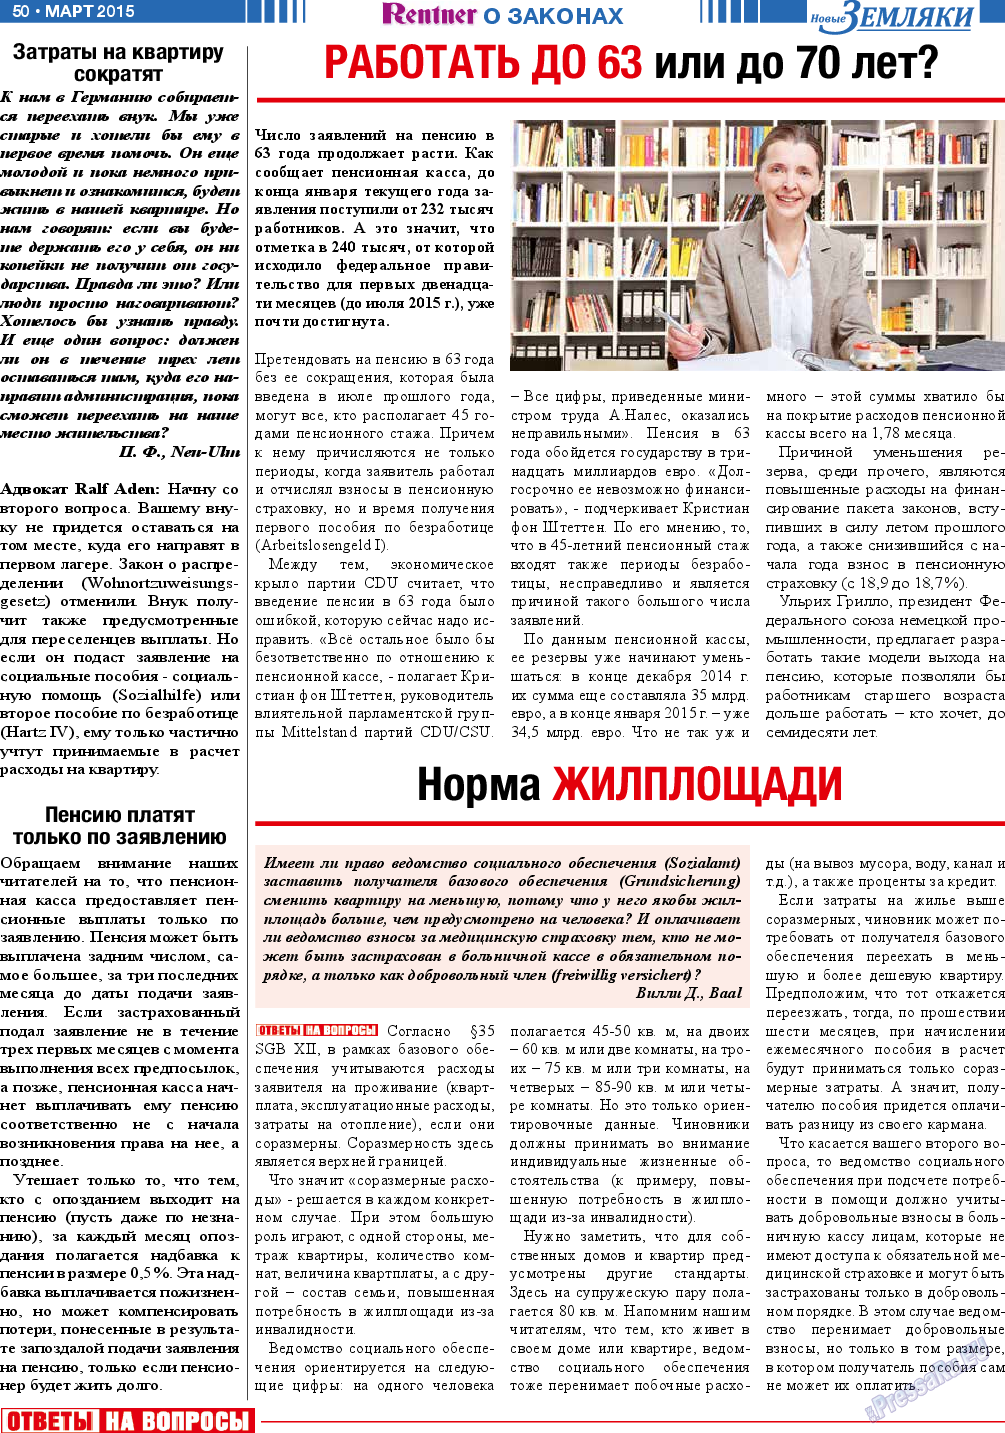 Новые Земляки, газета. 2015 №3 стр.50